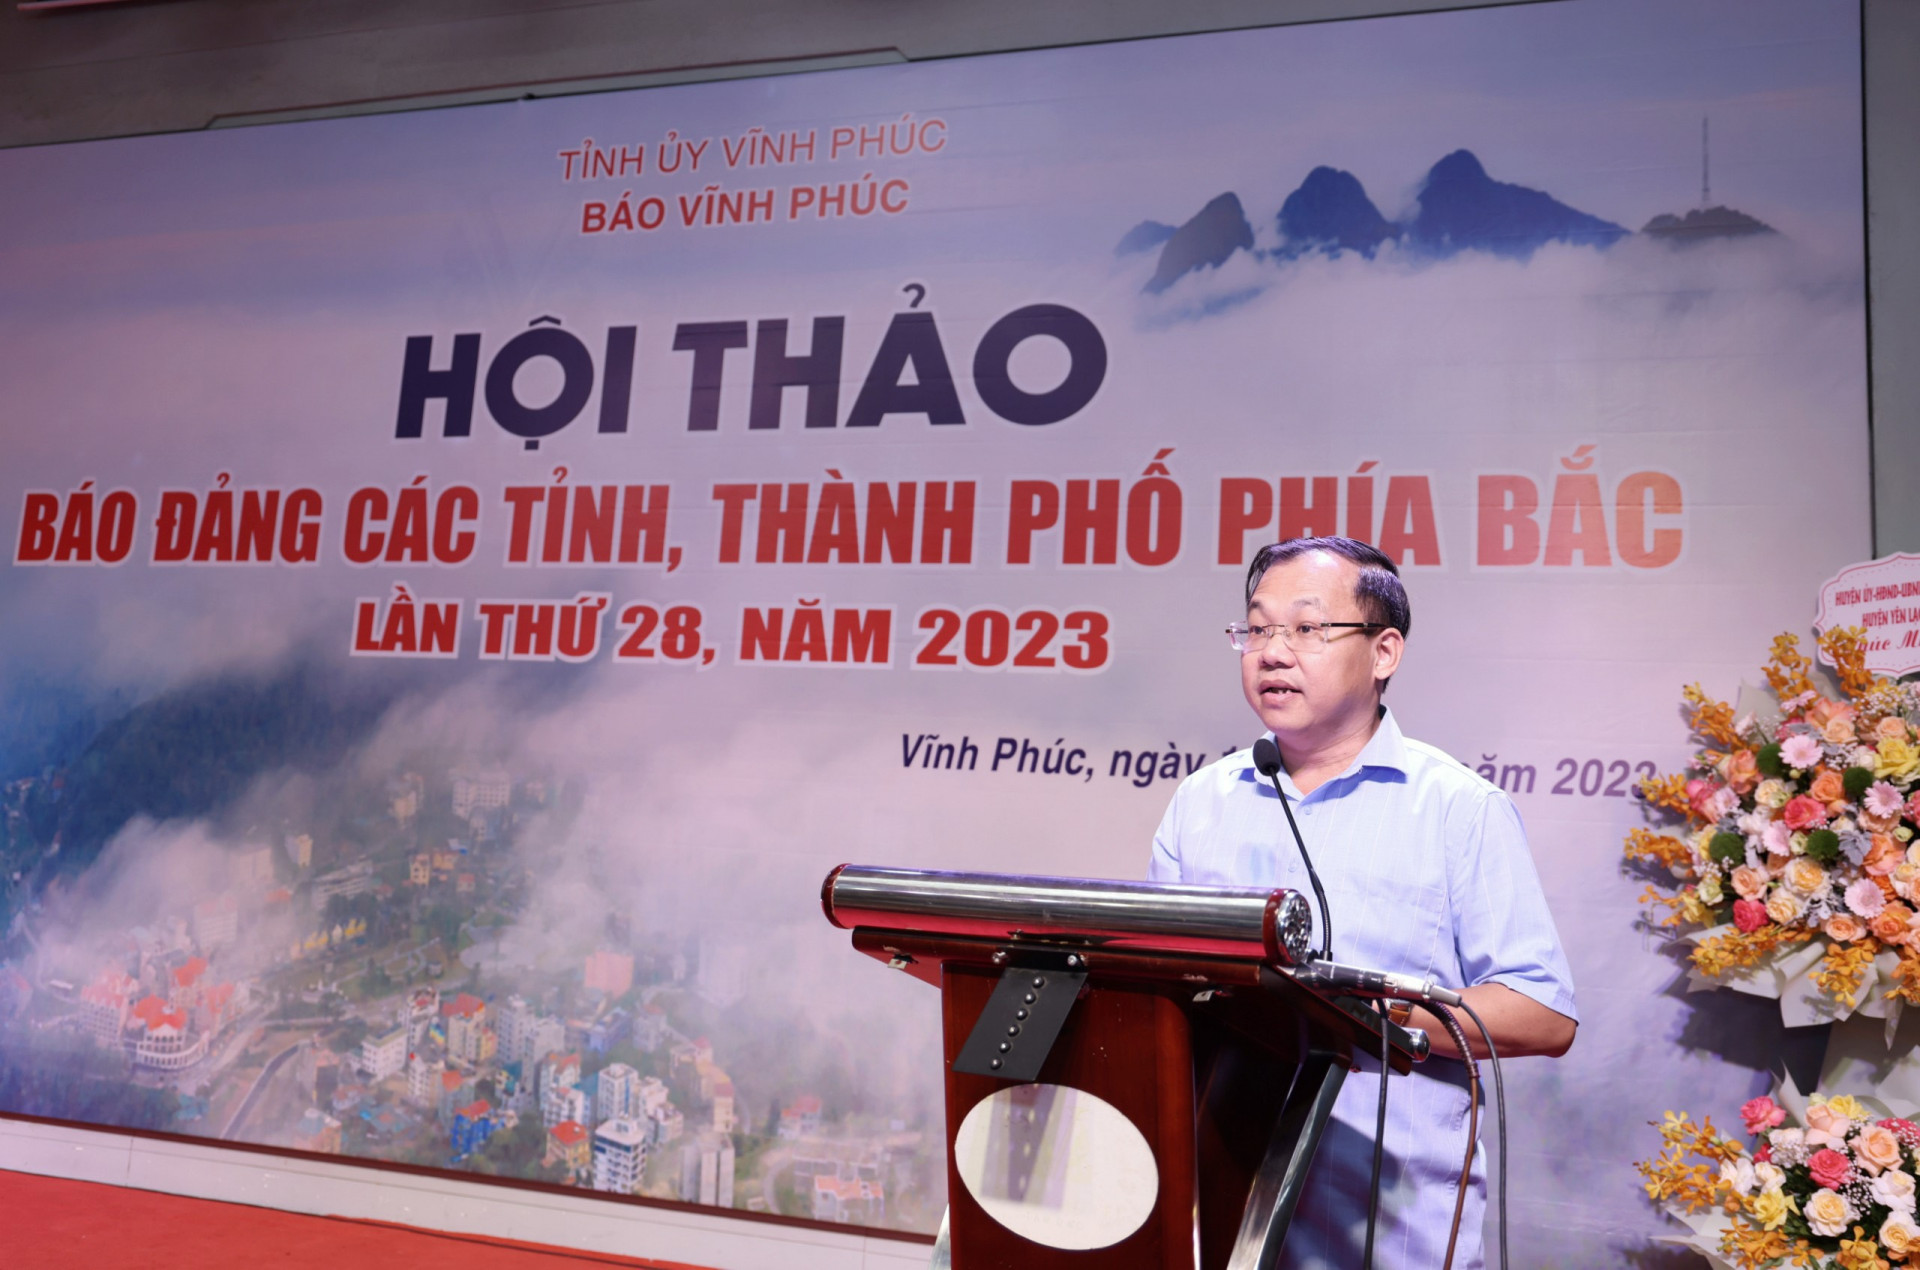 Ông Lương Chí Công - Phó Tổng Biên tập Báo Hà Nội Mới trình bày tham luận tại hội thảo.